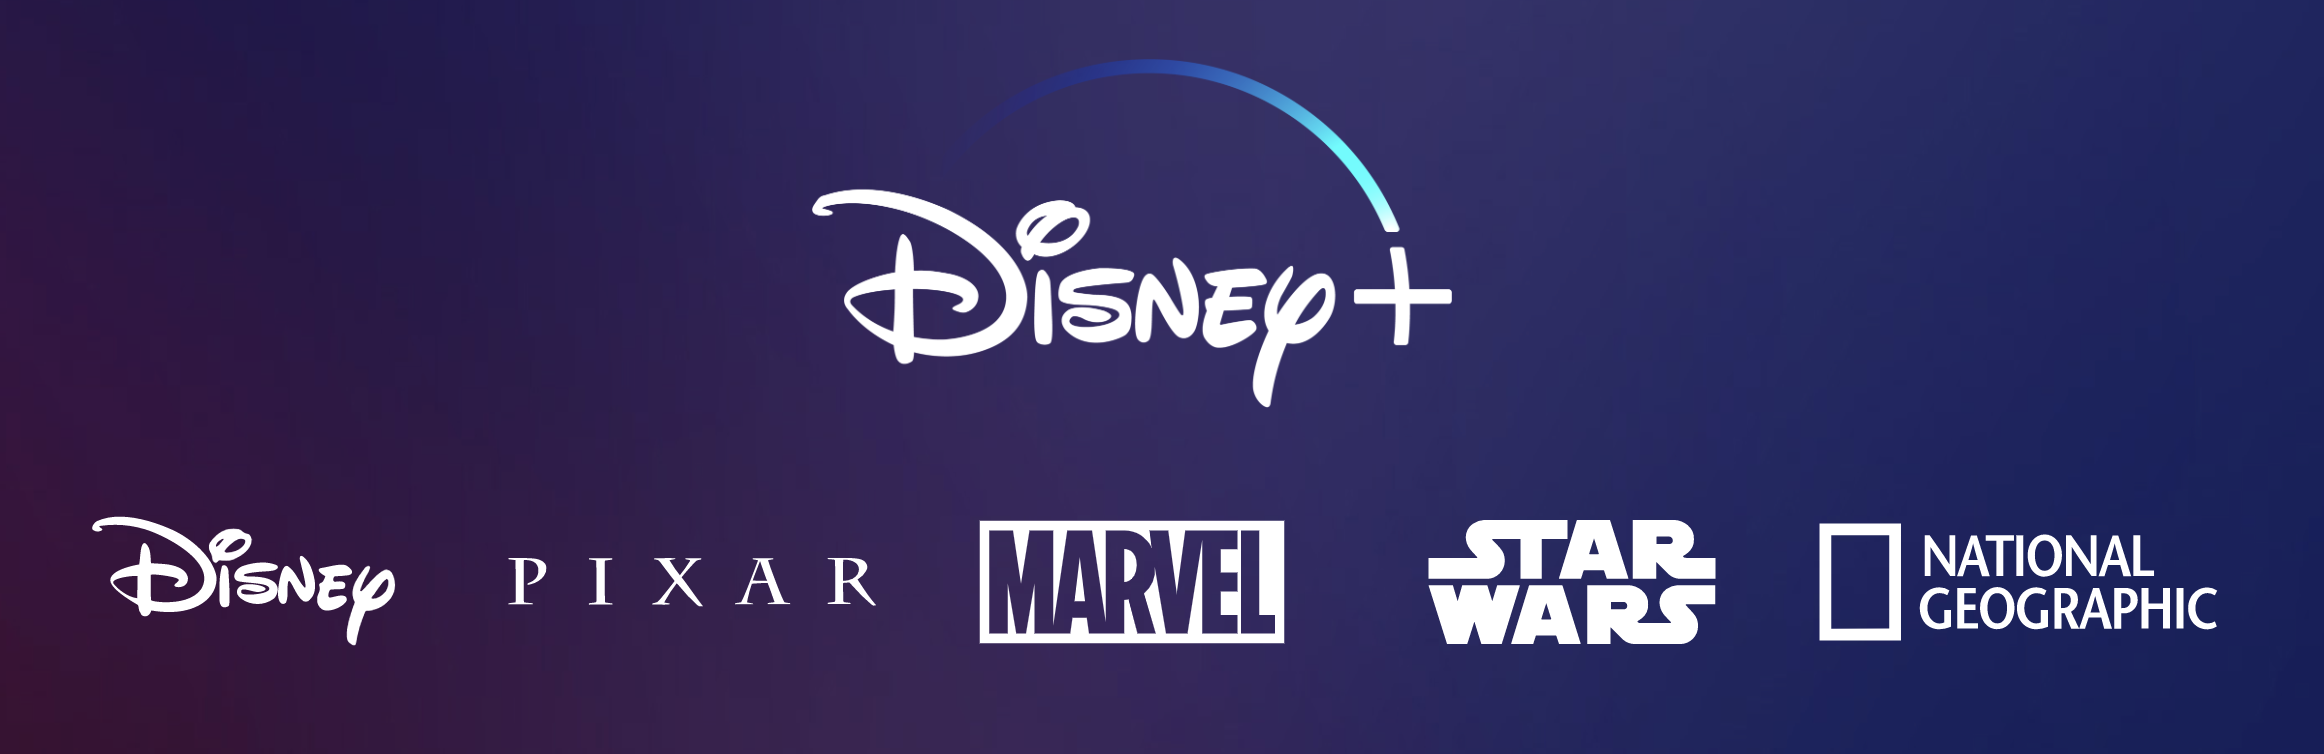 ディズニーの新動画ストリーミング Disney Plus の破壊力ーーnetflixに対する優位性を考えてみる Bridge ブリッジ テクノロジー スタートアップ情報